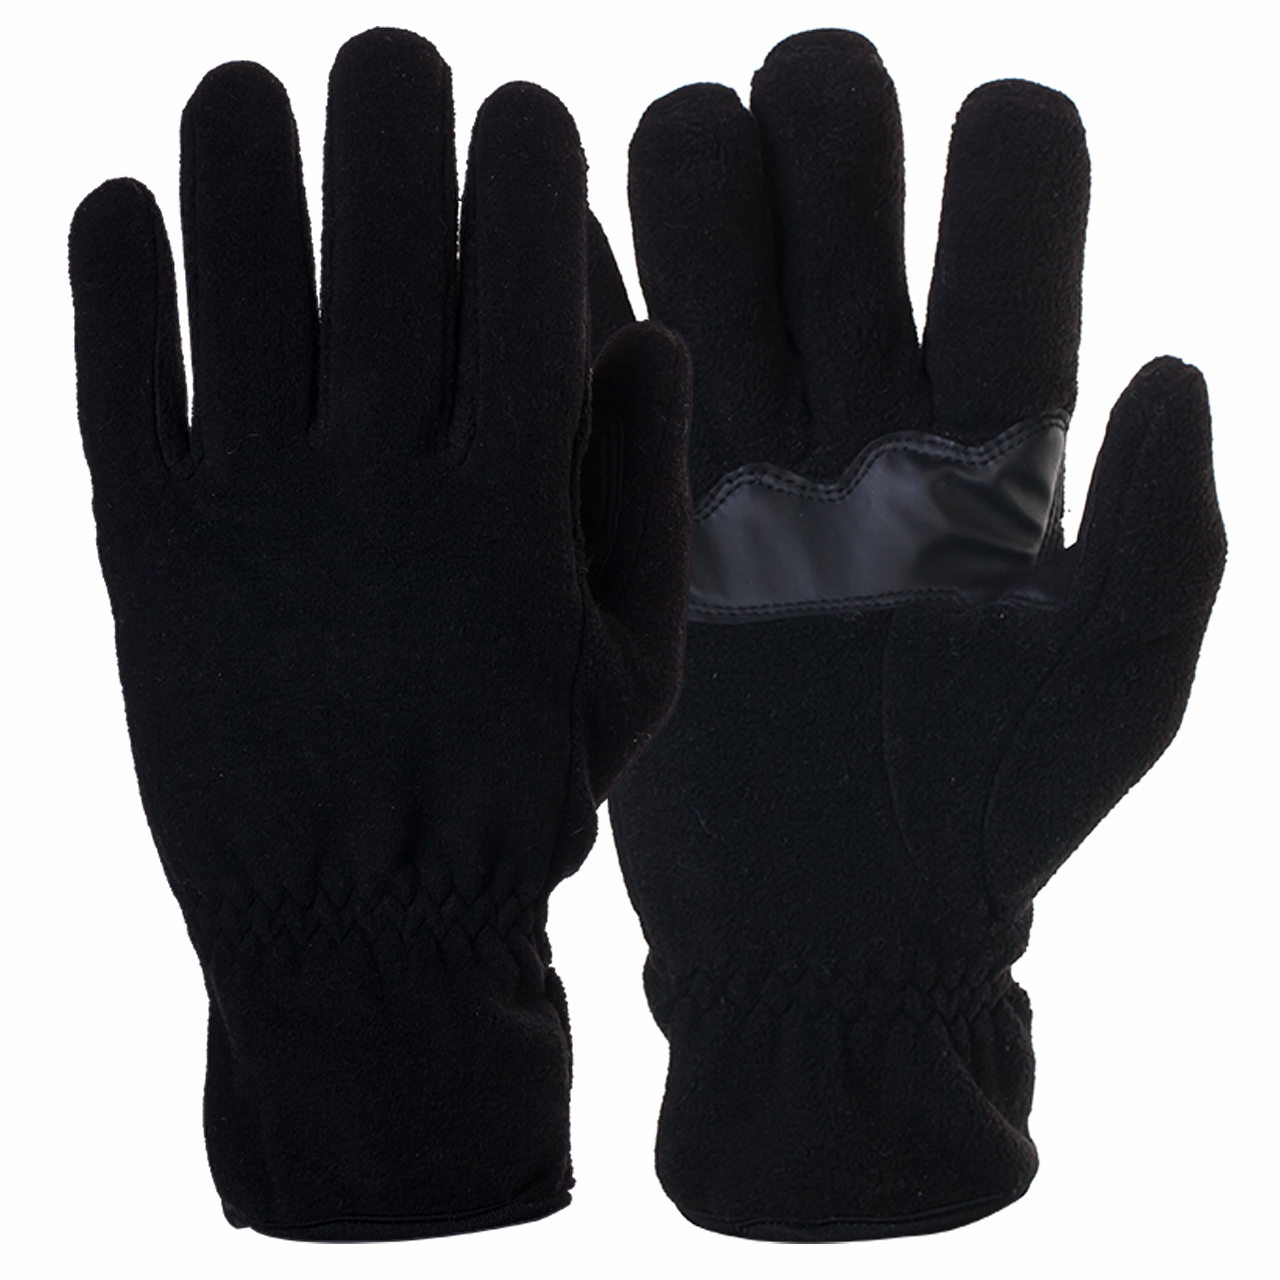 Недорогие зимние перчатки Winter Proof